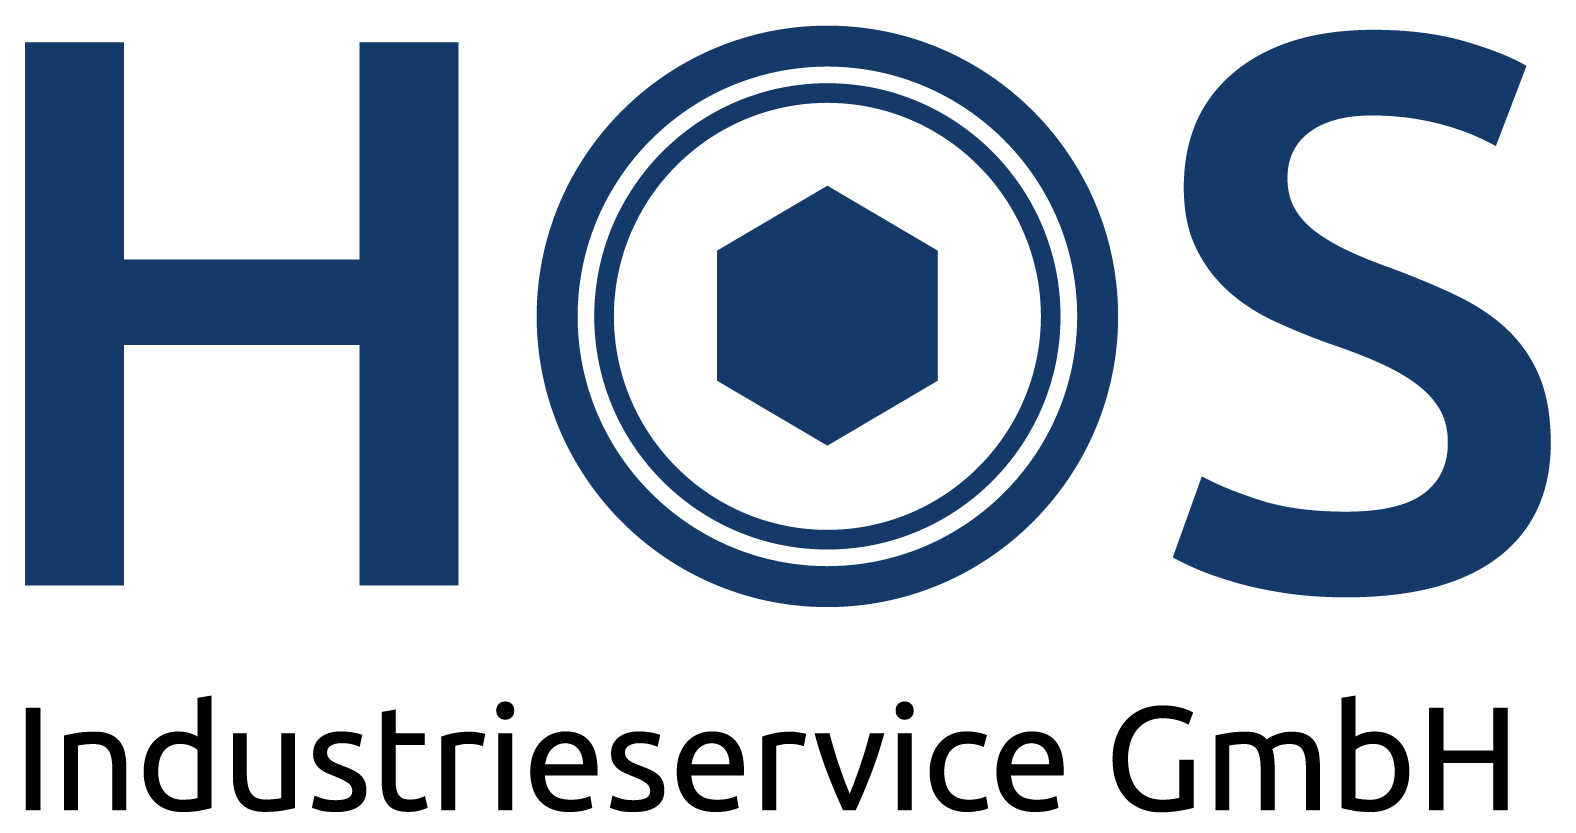 Hos Industrieservice GmbH